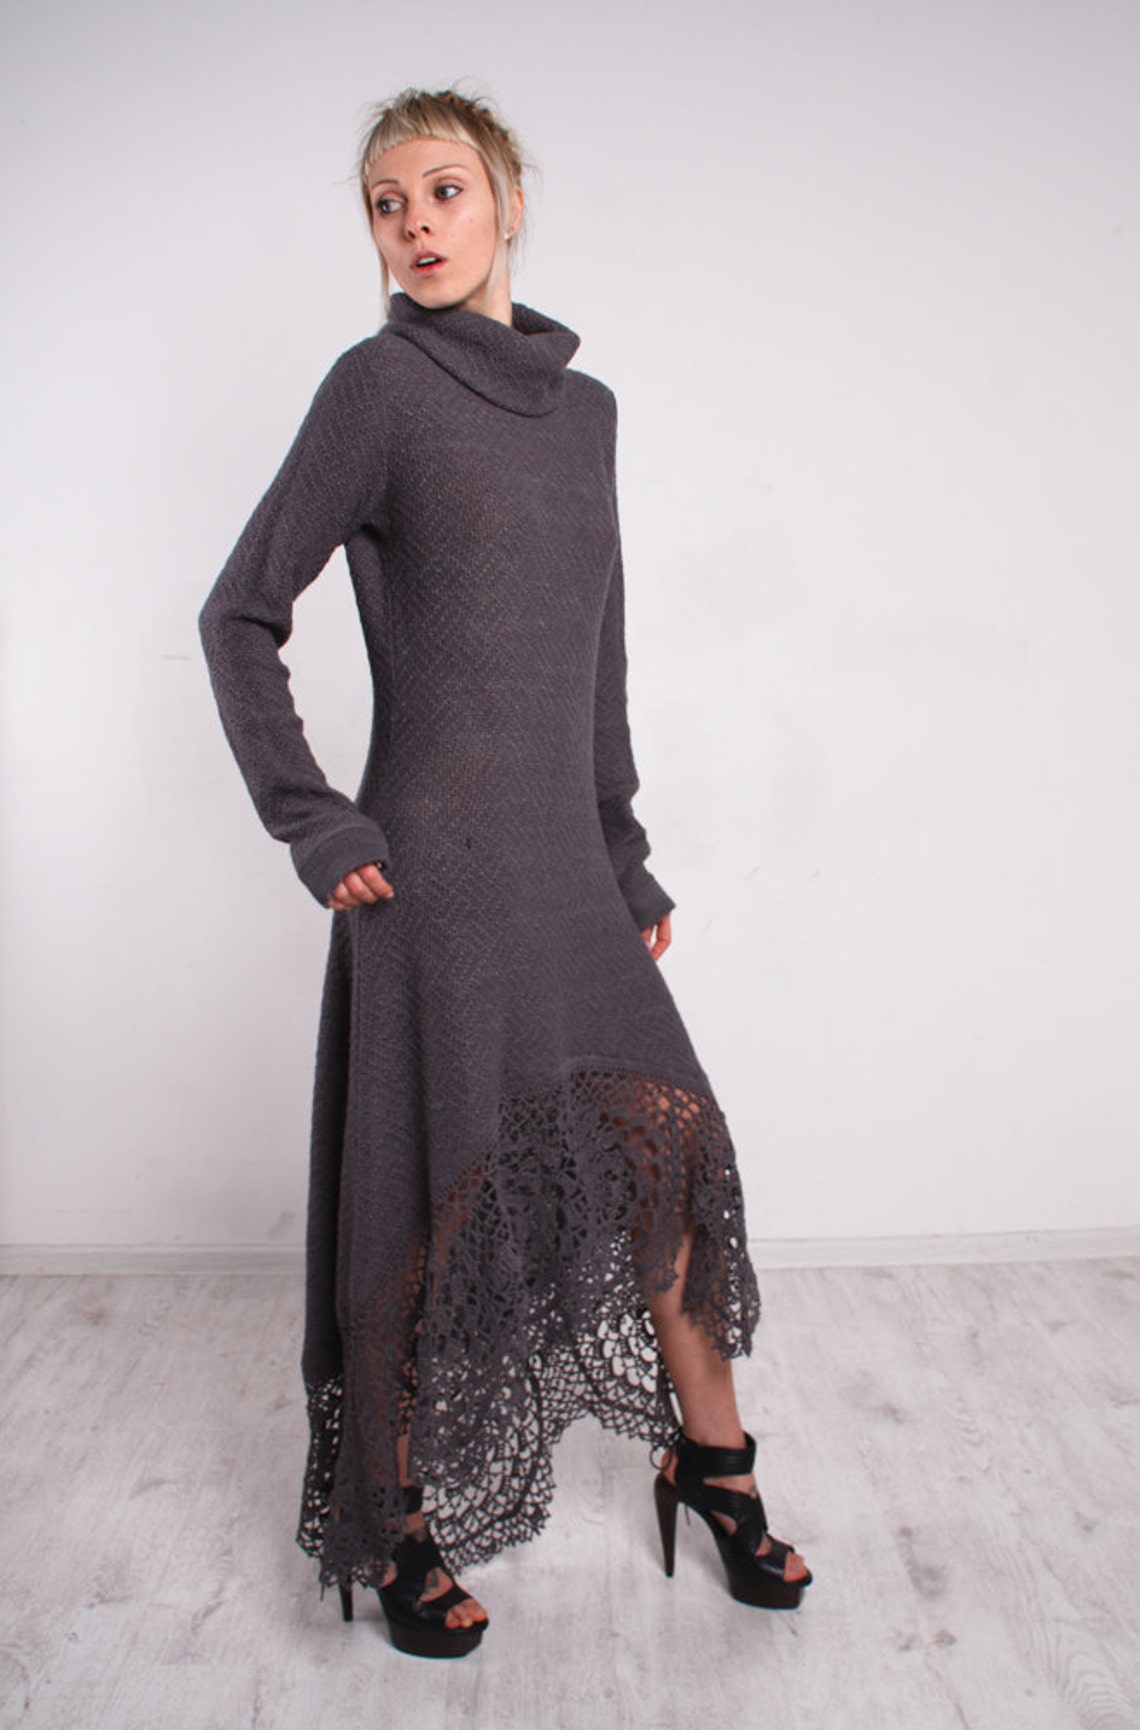 CROCHET Greydress Asymmetric Grey Dress Maxi Lace Dress - Etsy